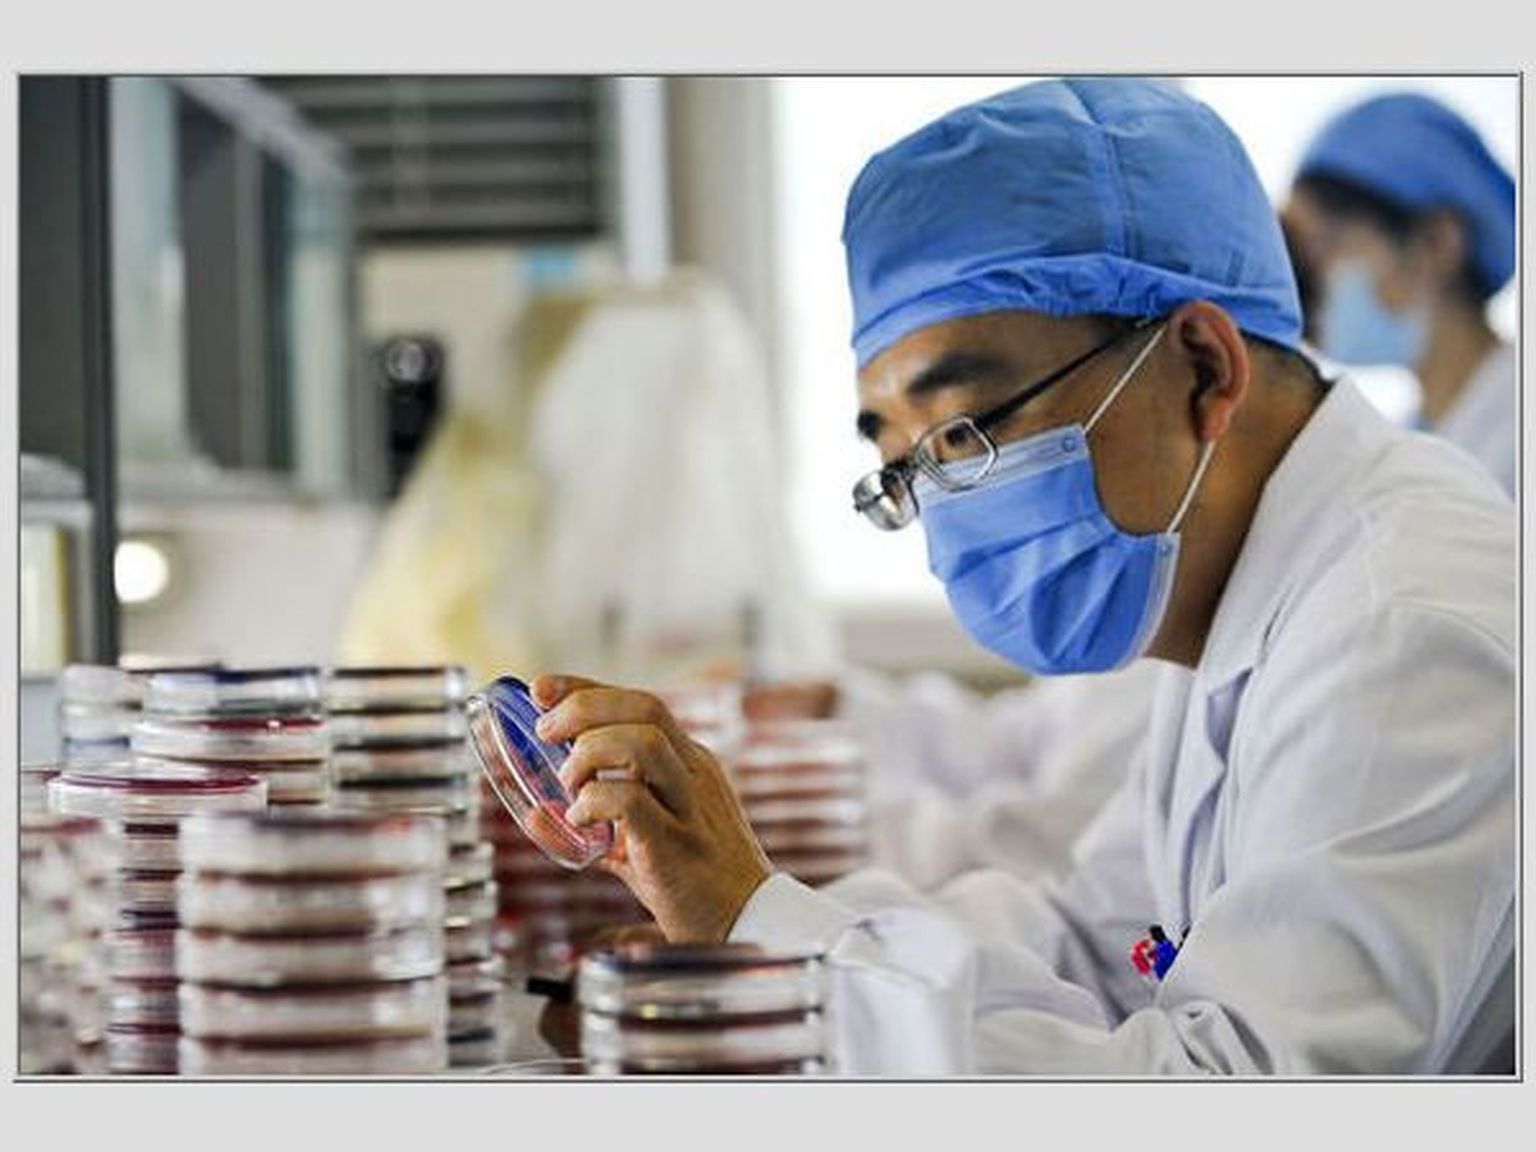 Hiina arst bakteriproovi uurimas.